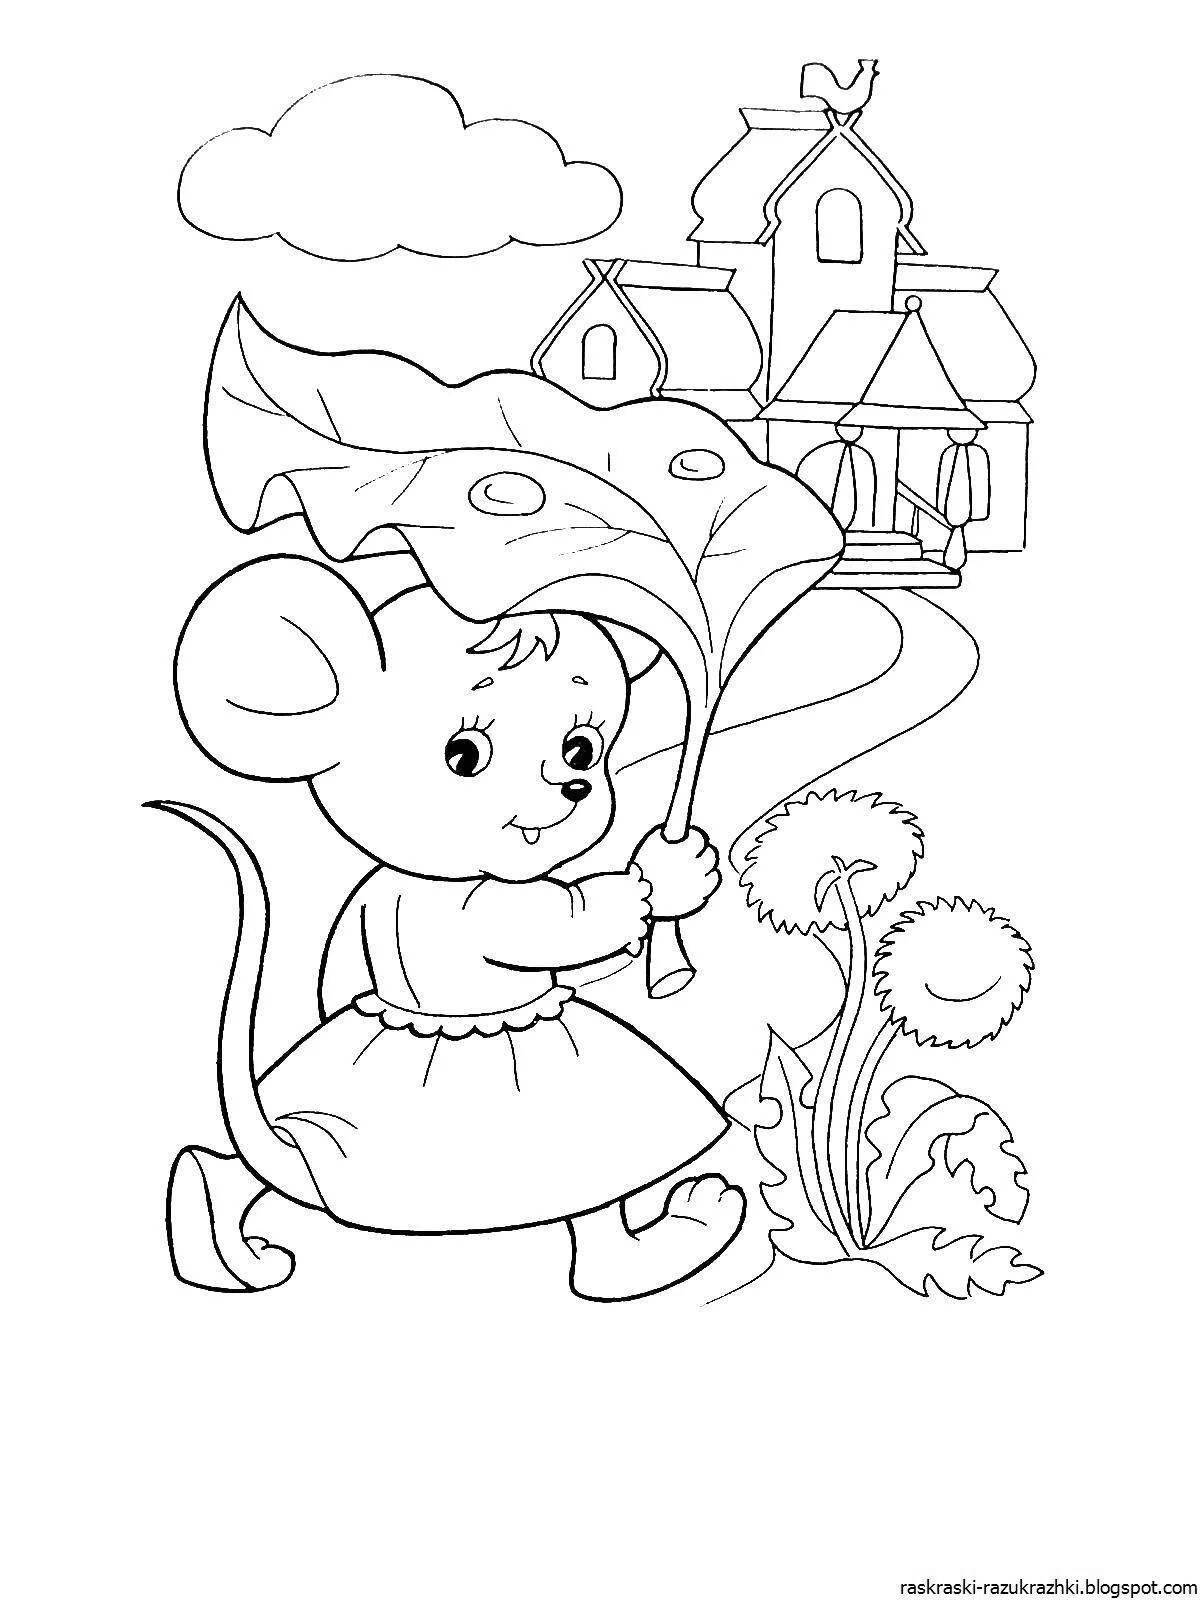 Joyful fairy tale coloring book